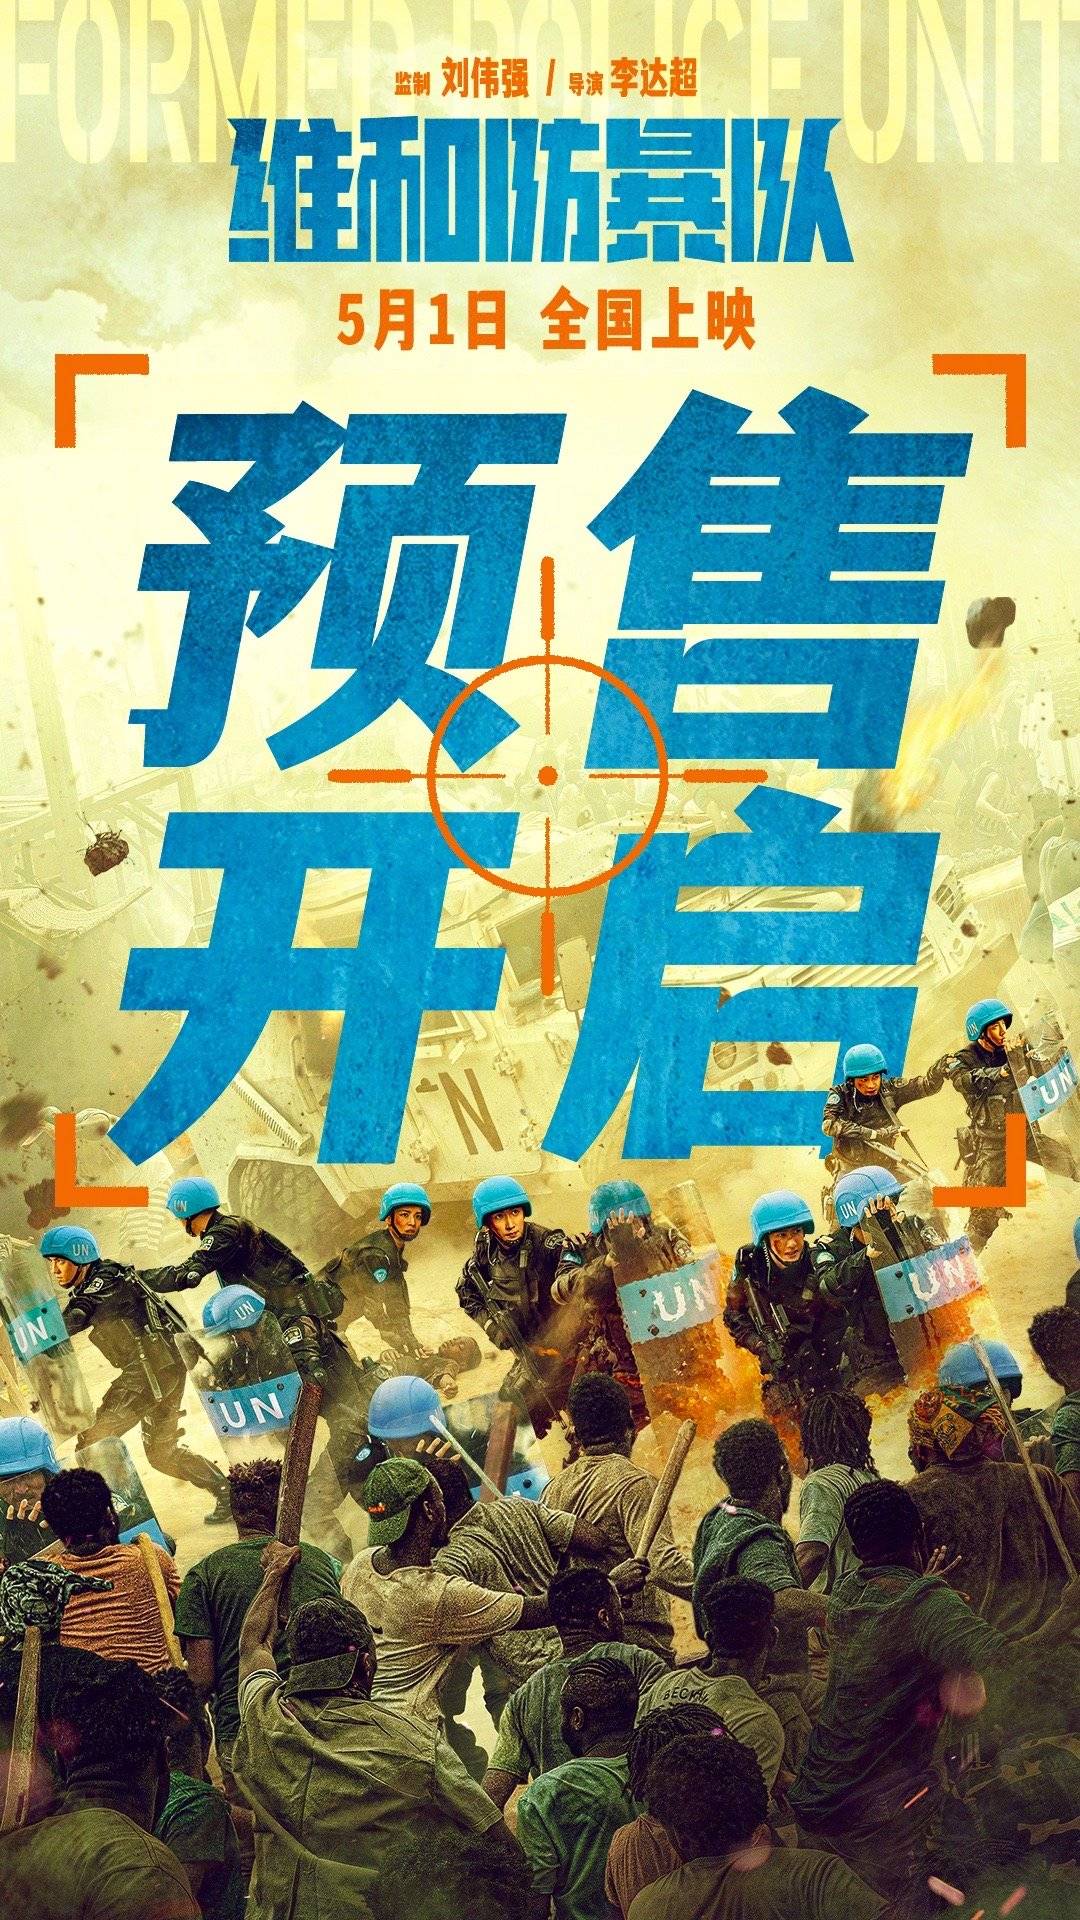 黄景瑜王一博主演《维和防暴队》曝制作特辑及角色海报 5月1日上映预售已开启